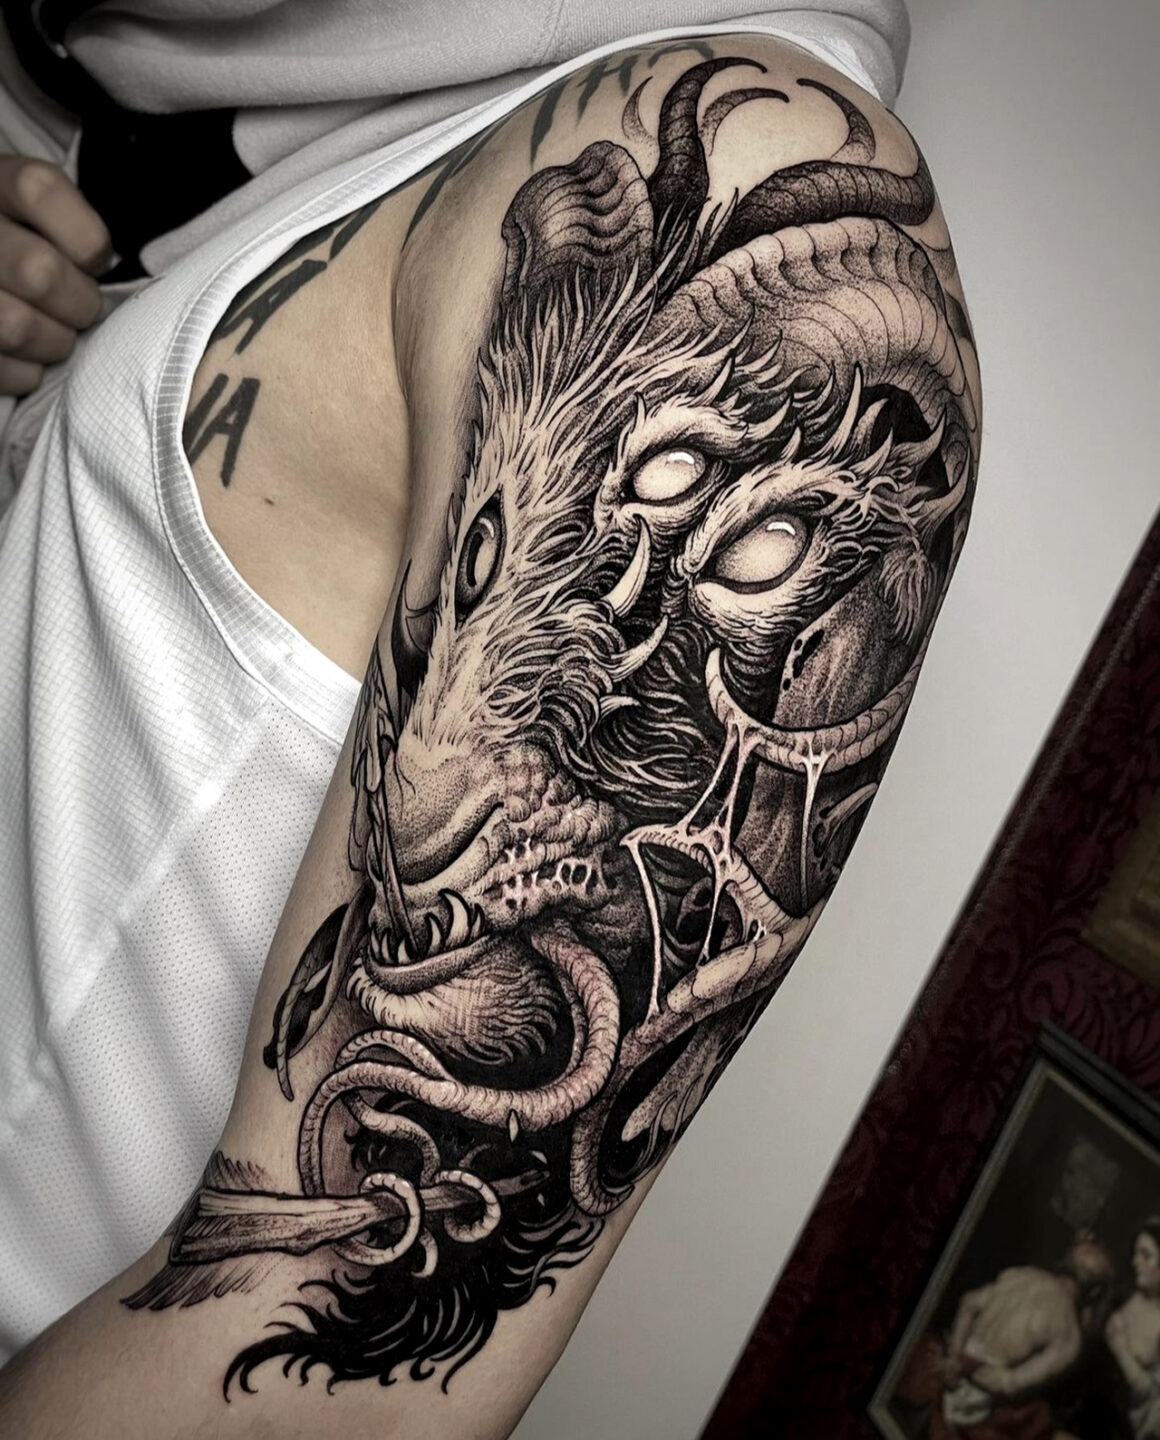 Tattoo by André Fantini, @fantinitattoo